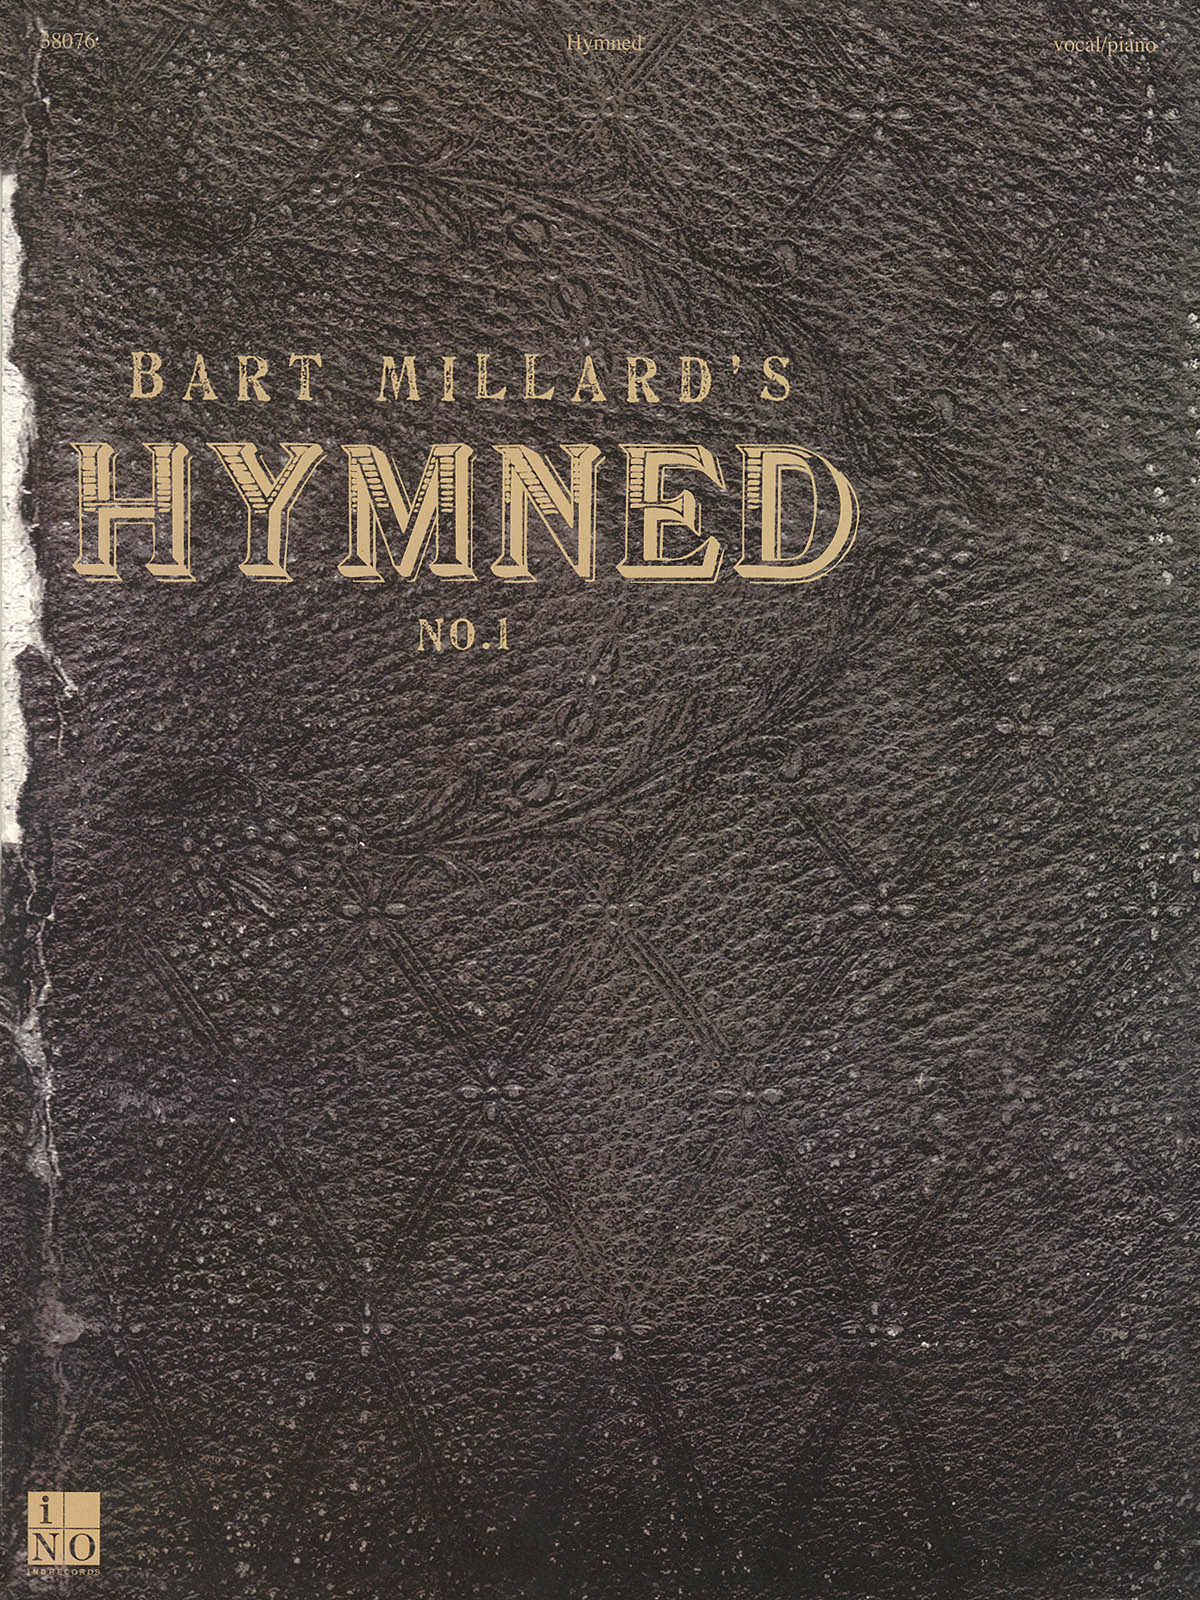 Bart Millard: Bart Millard - Hymned No. 1: Vocal Album